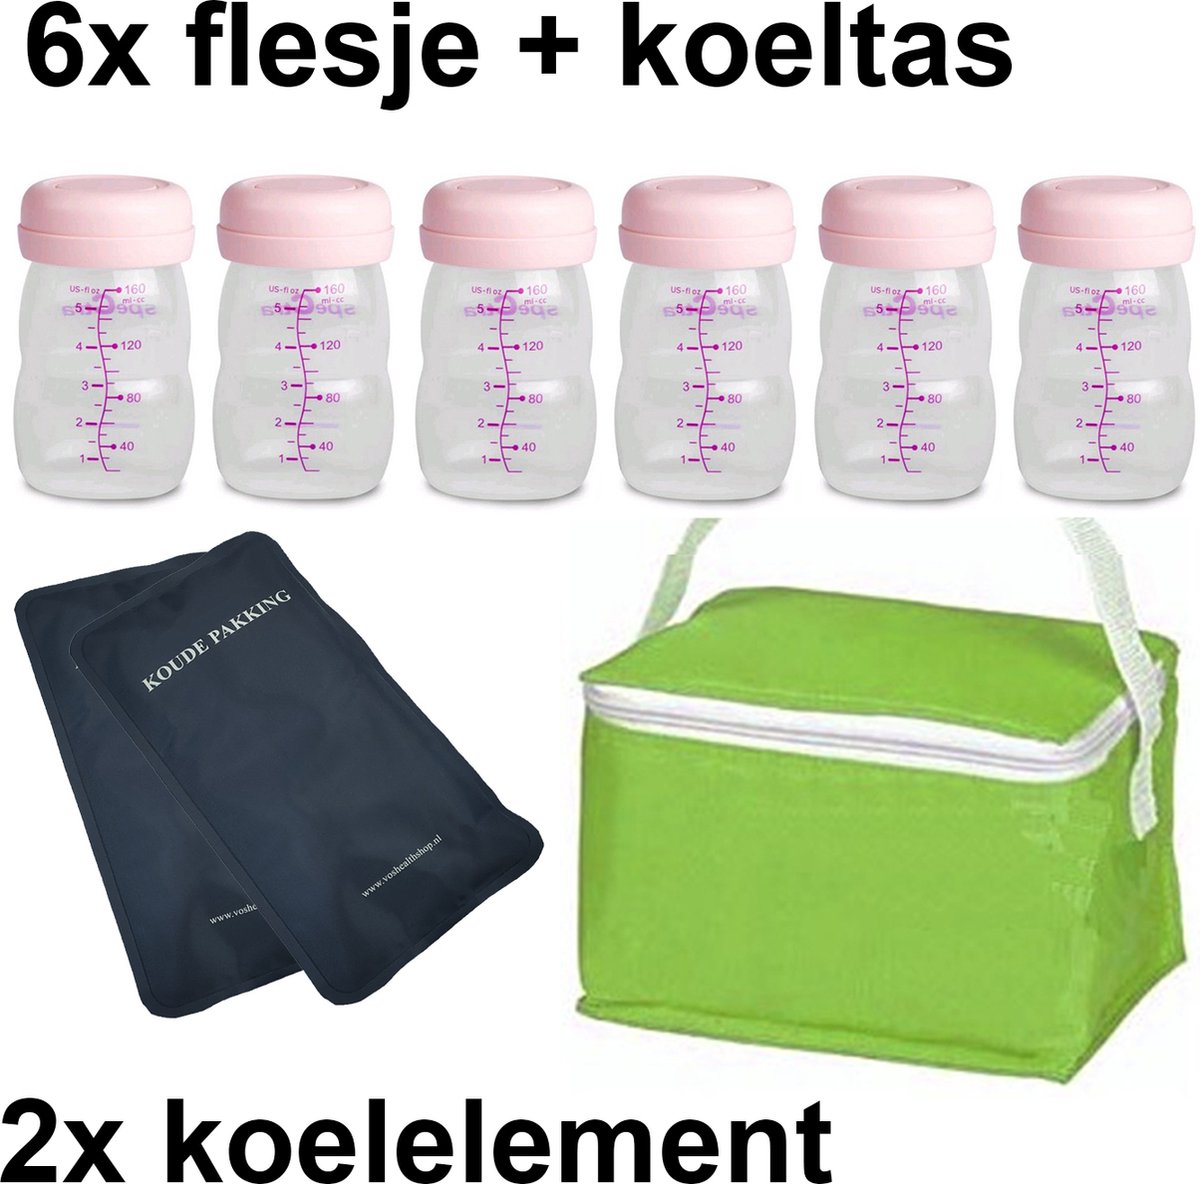 Moedermelk flesjes - 6 x 160ml - met groen koeltasje en koelelementen - borstvoeding flesjes - BPA vrij